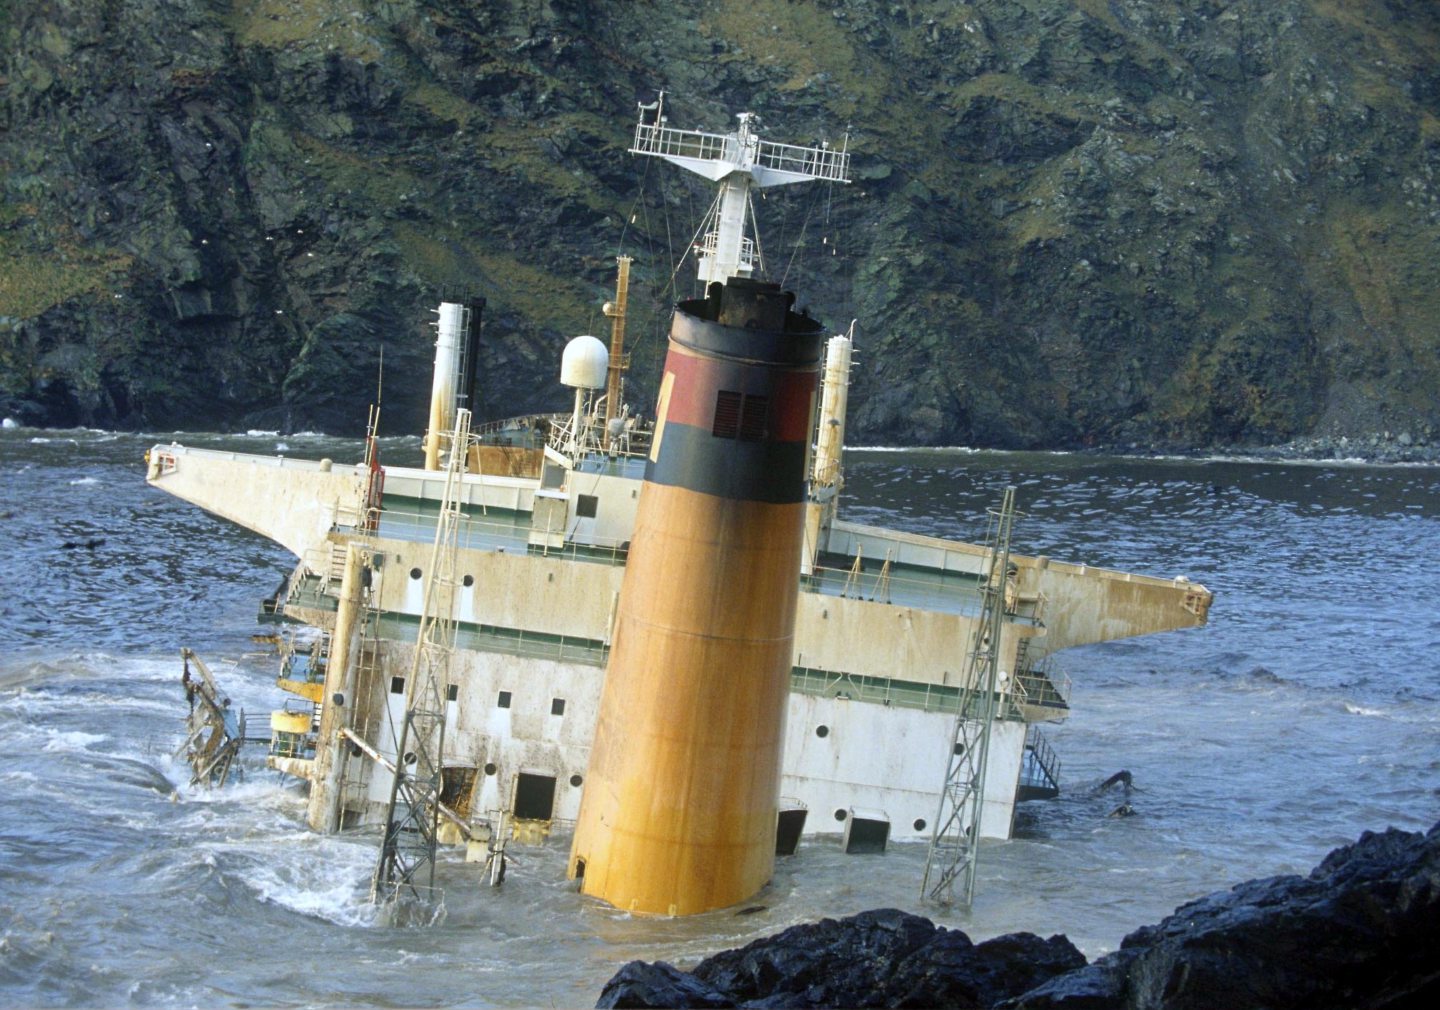 The Braer tanker sinking causing an oil spill in Shetland.